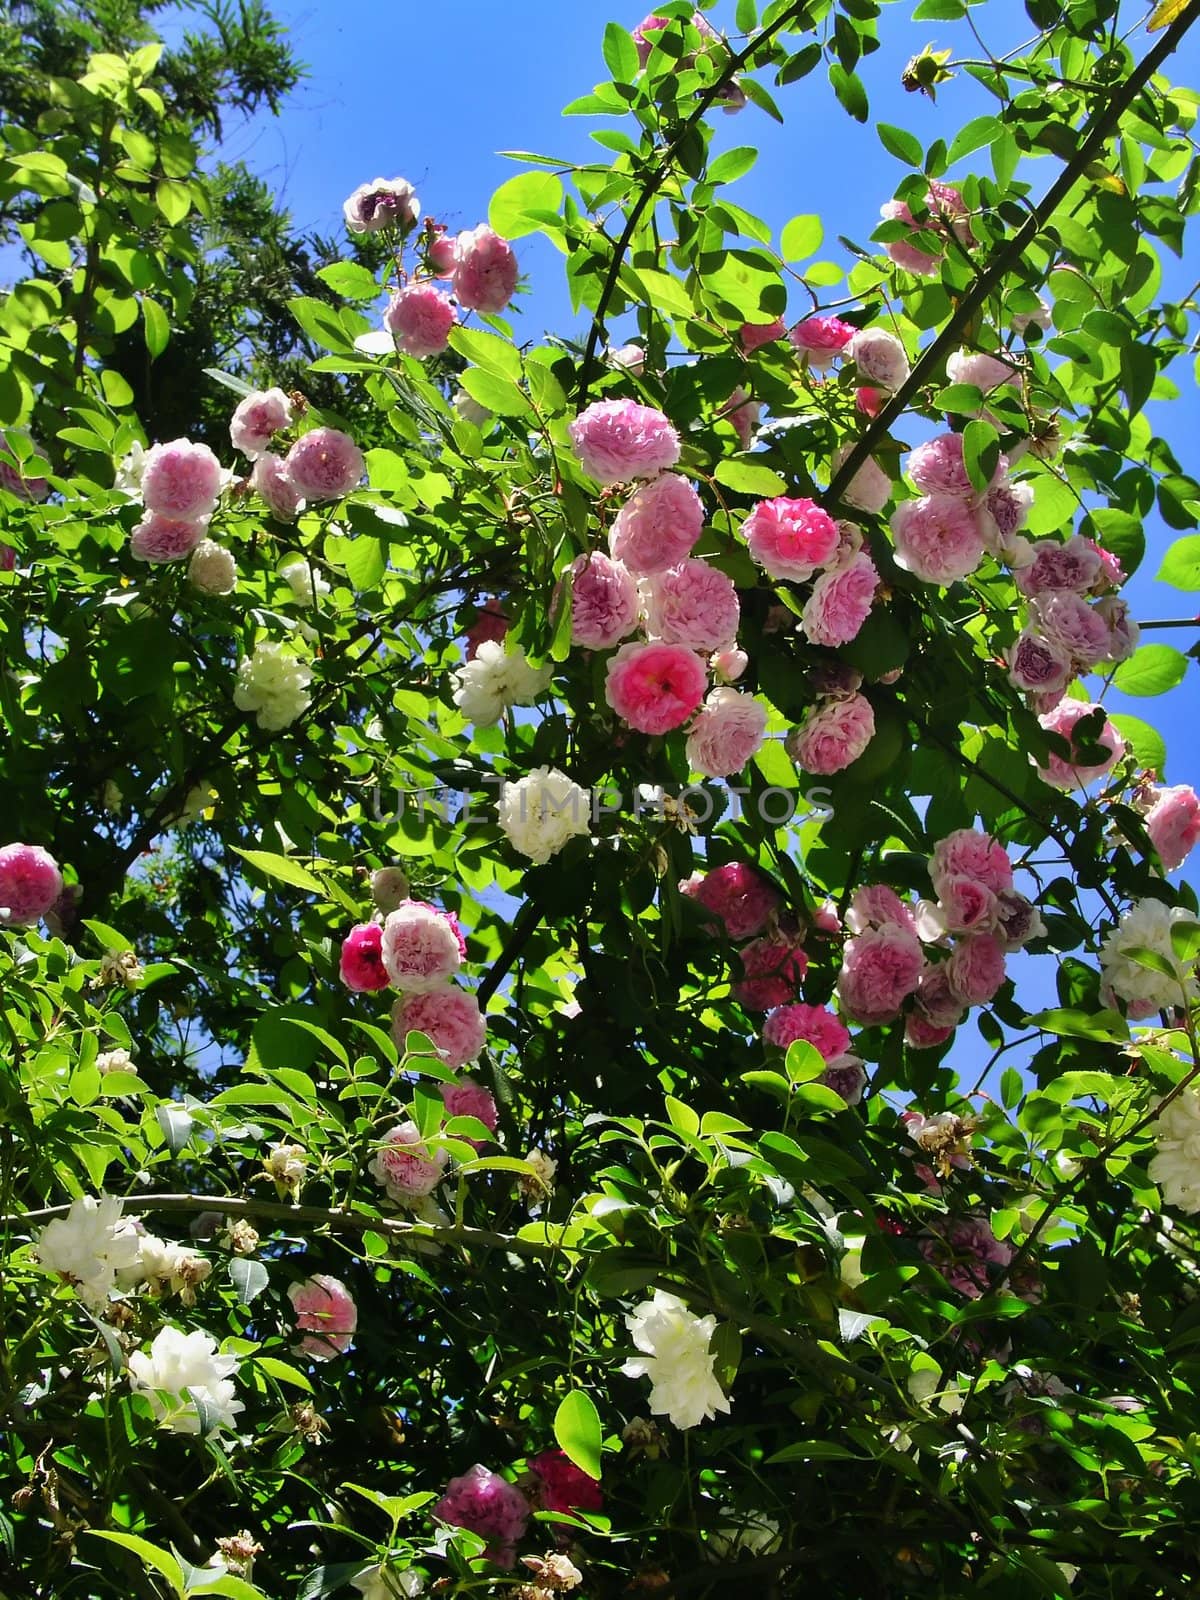 A bush of roses - Rosa muscosa centifolia